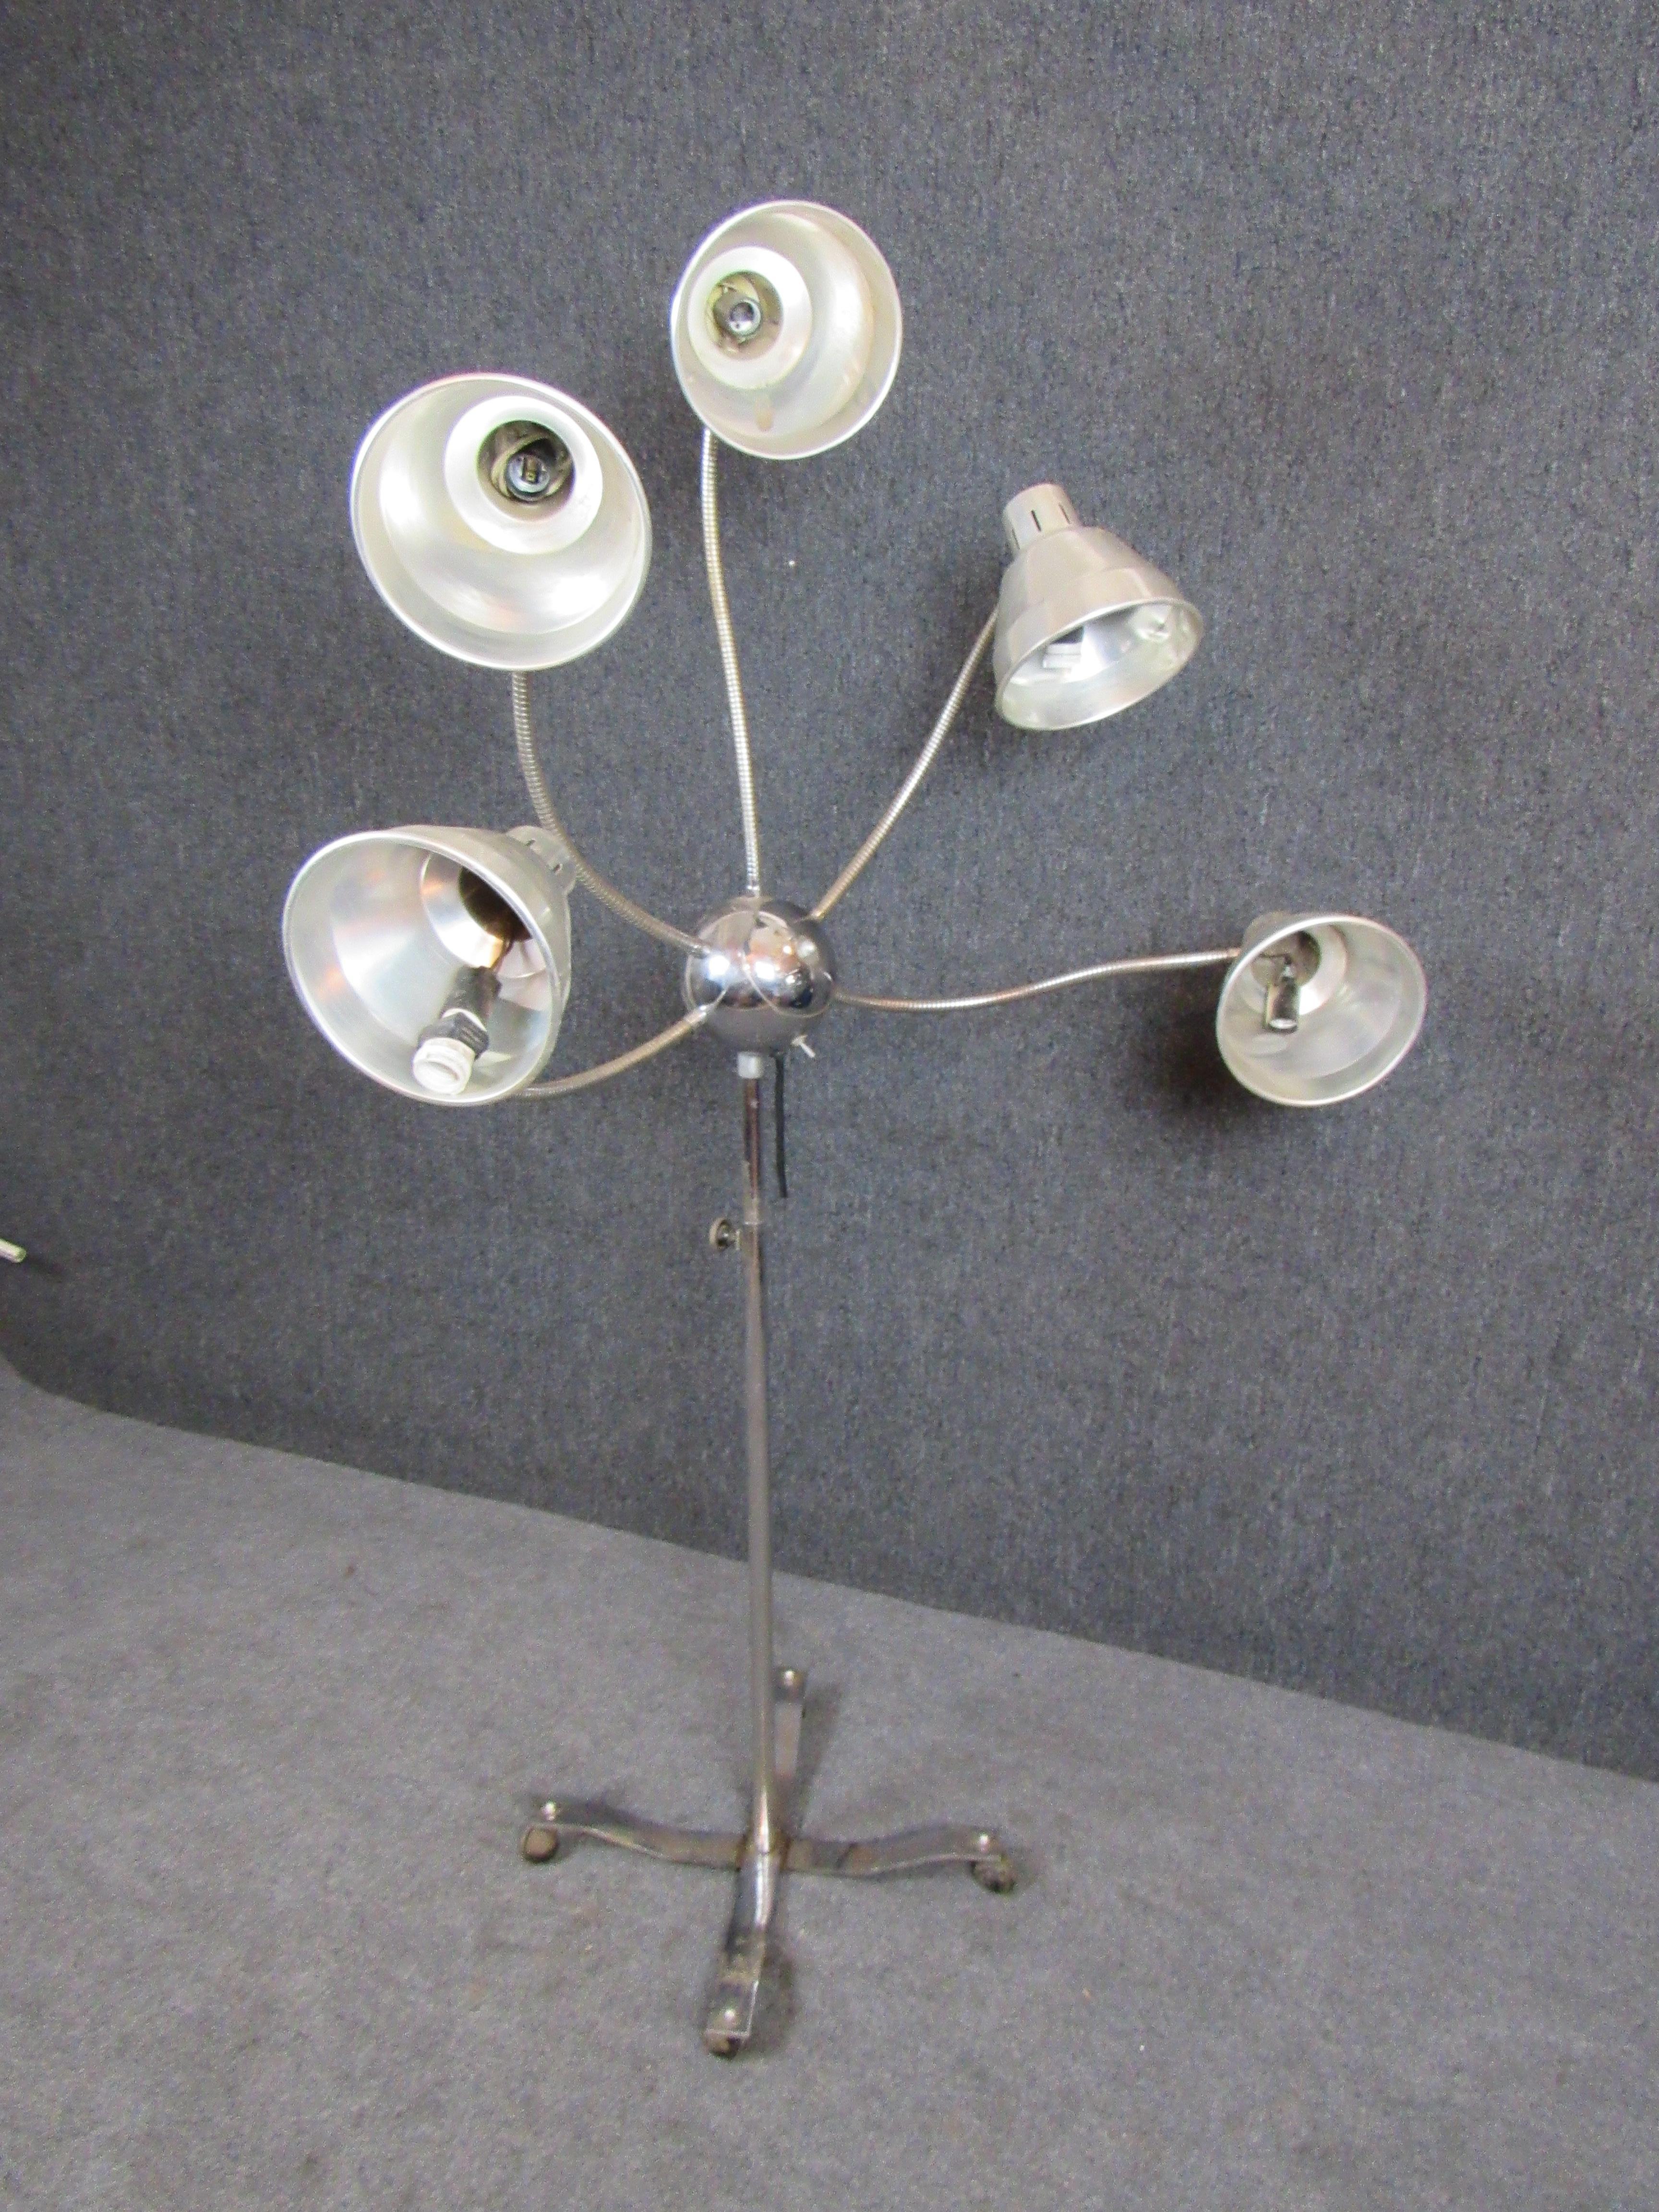 Américain Funky Five-Headed Gooseneck Lamp (lampe à col de cygne à cinq têtes)